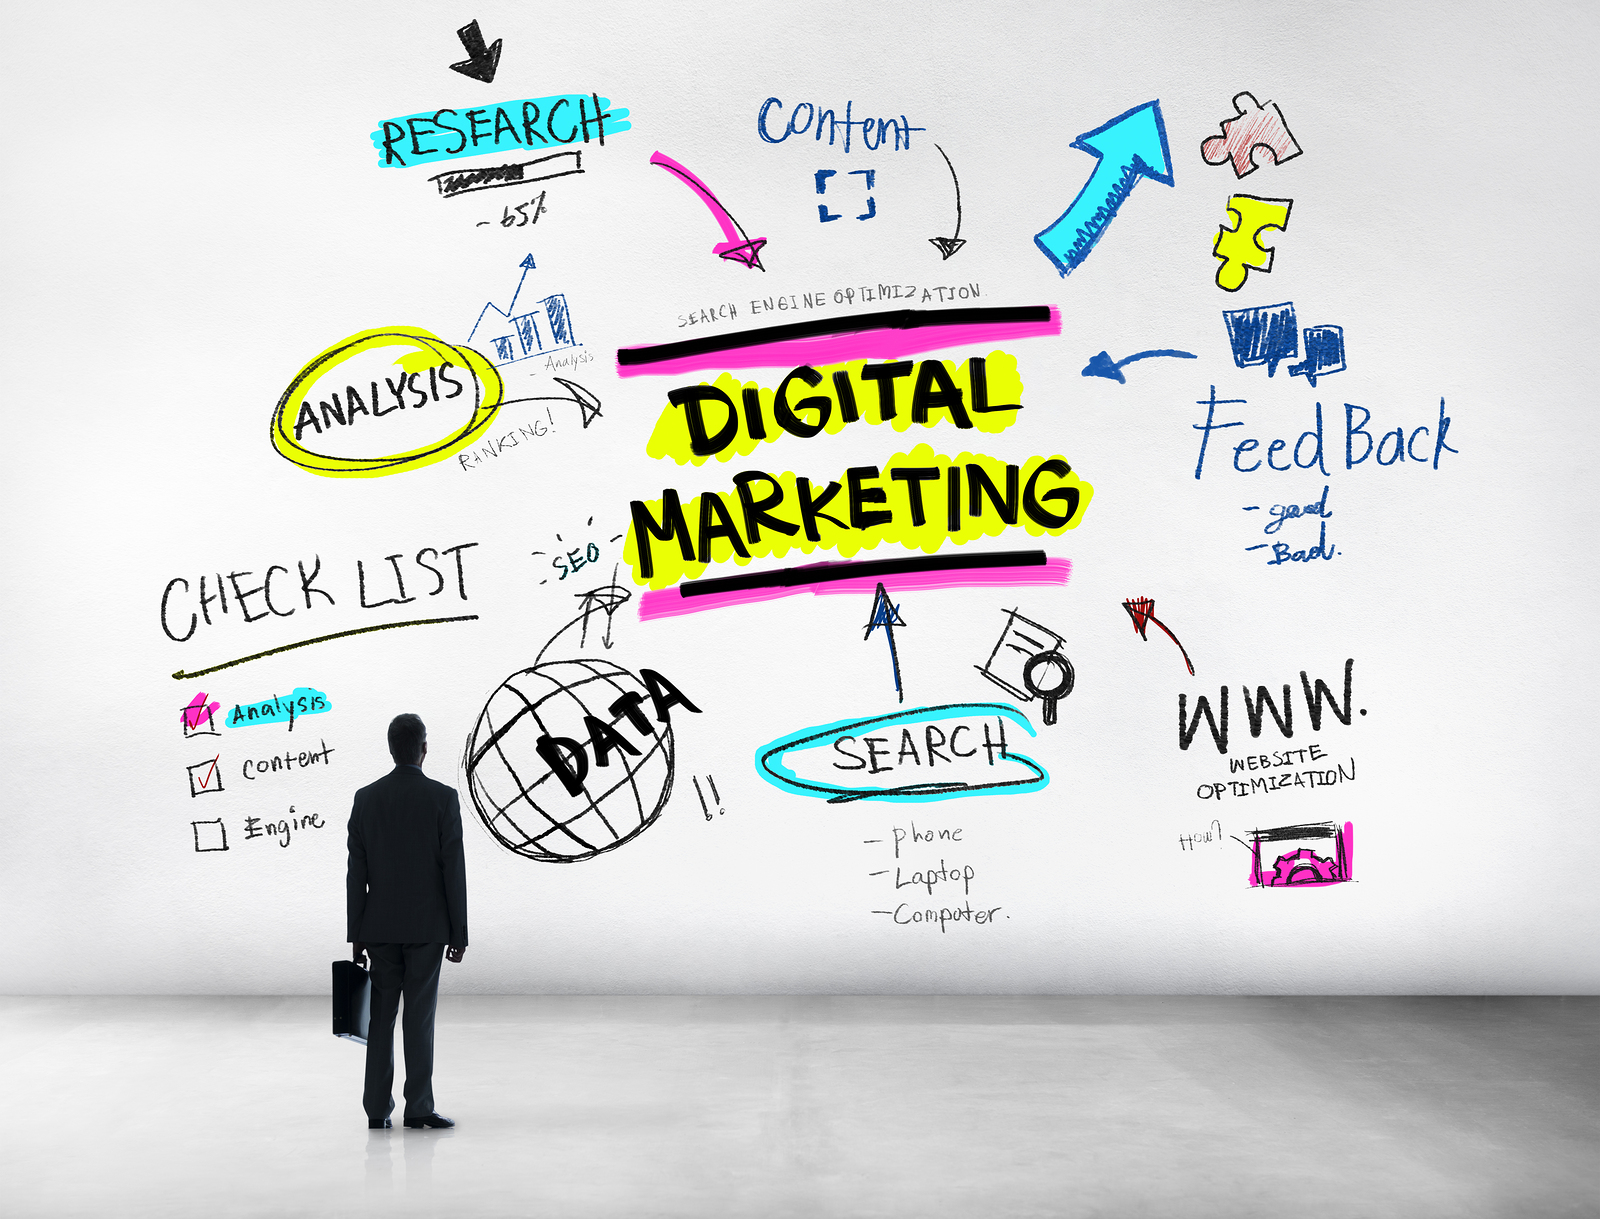 delhi digital marketing, Digital Marketing delhi, digital Marketing training delhi, digital Marketing agency delhi,  digital marketing course in delhi